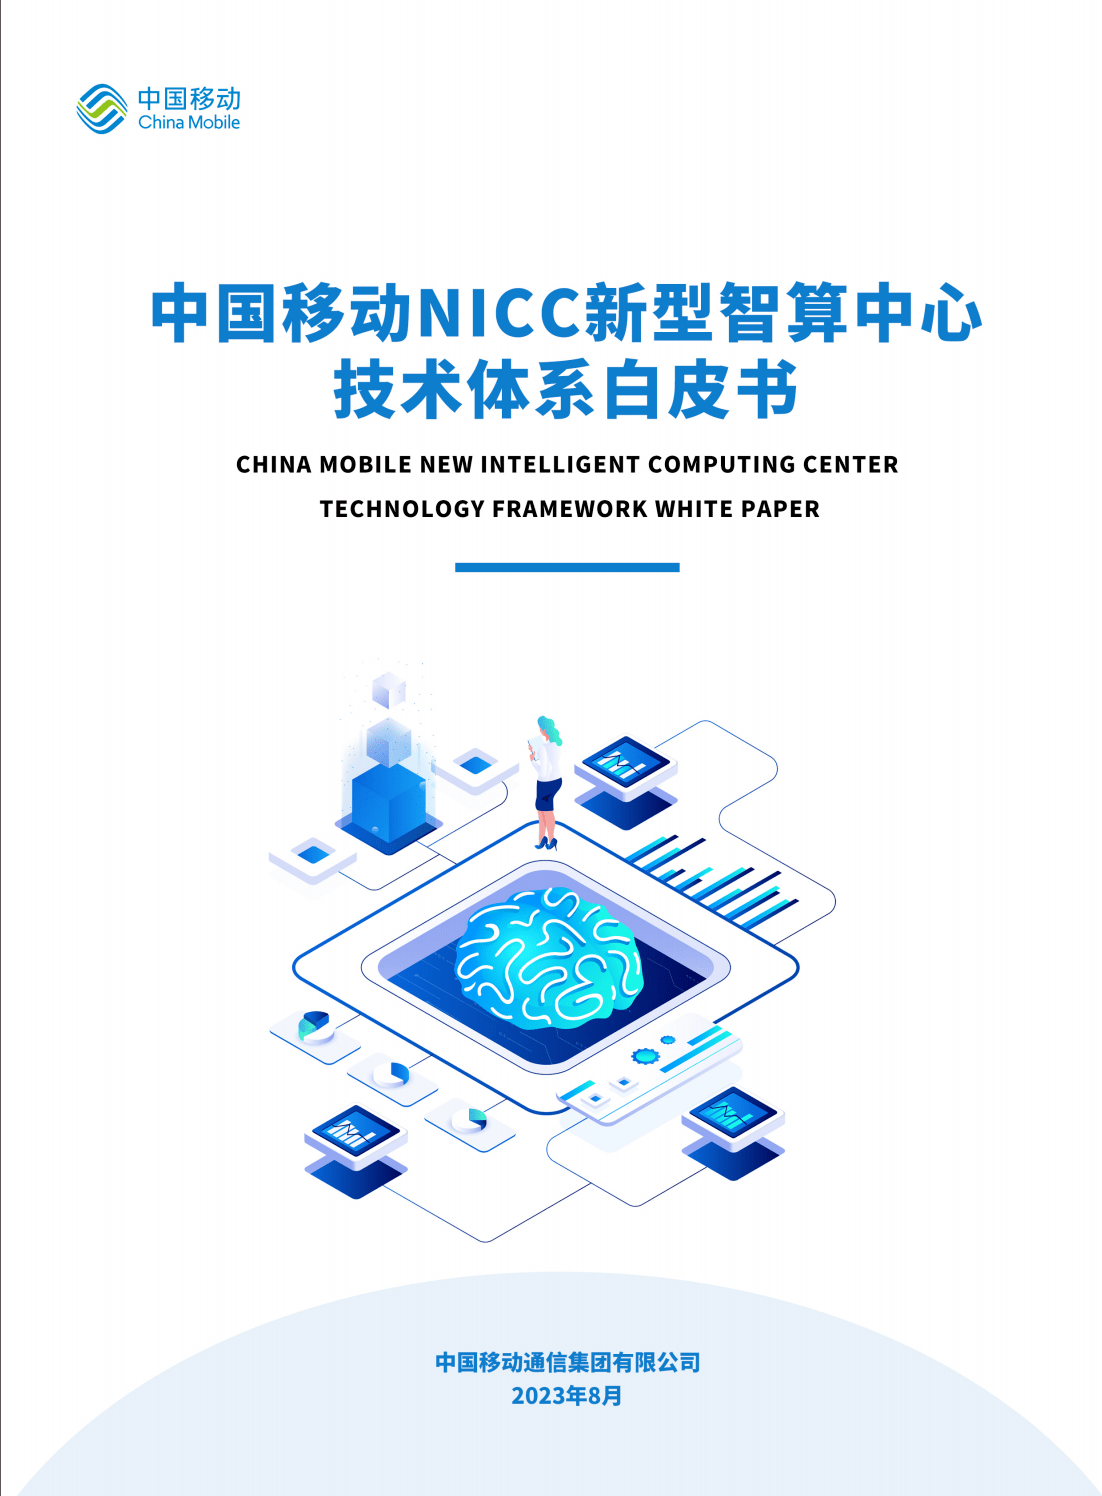 54页|2023年NICC新型智算中心技术体系白皮书（附下载）_手机搜狐网